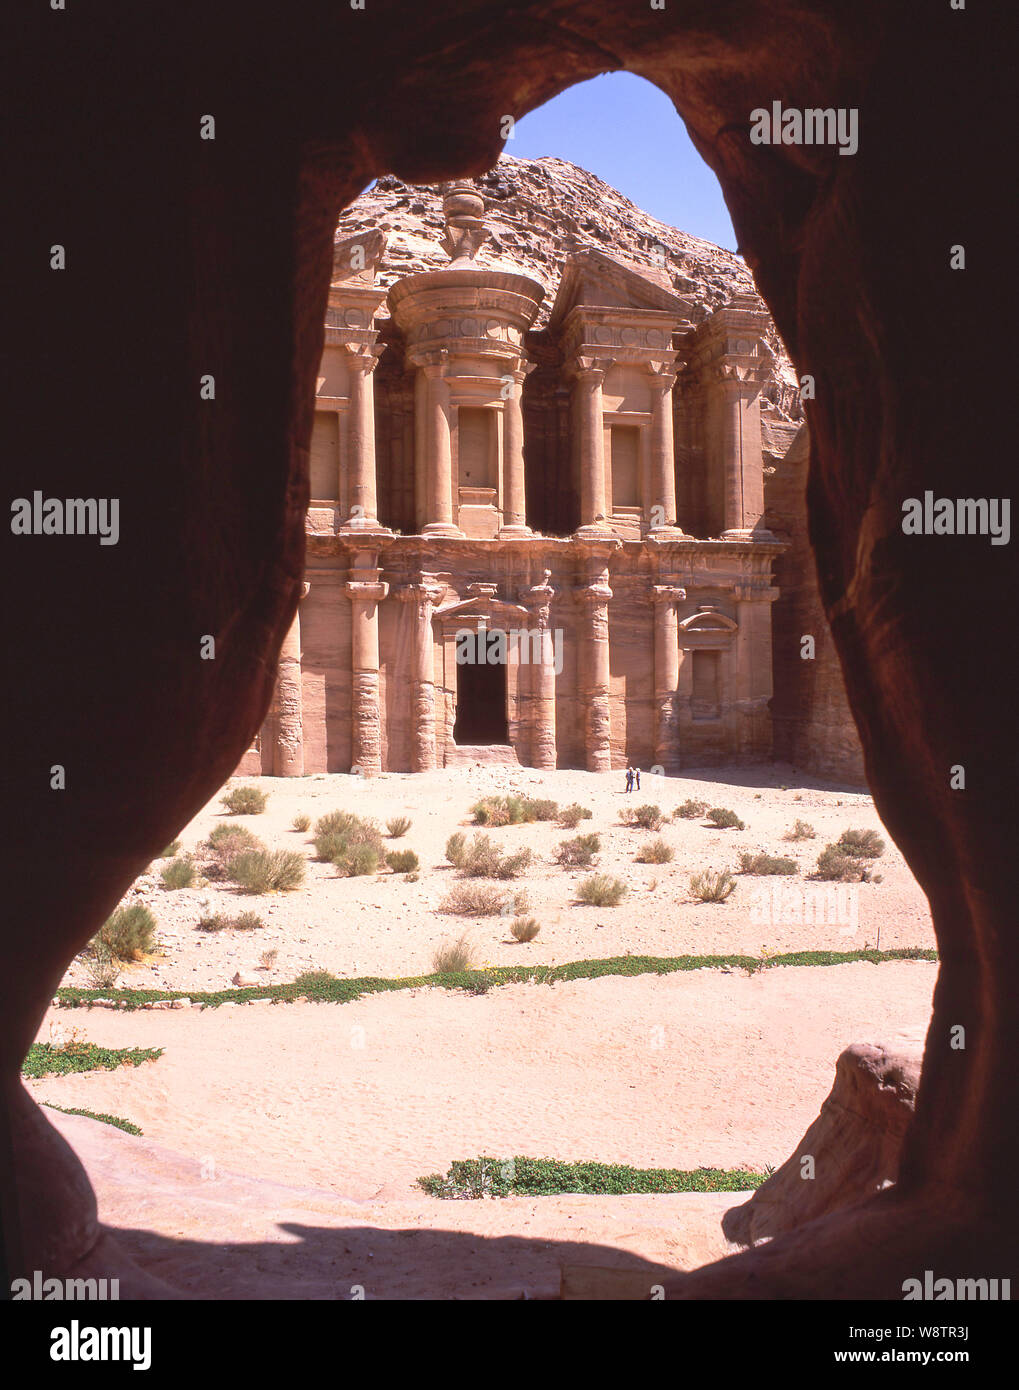 Il monastero di Deir facciata, antica città di Petra, Maan, Regno di Giordania Foto Stock